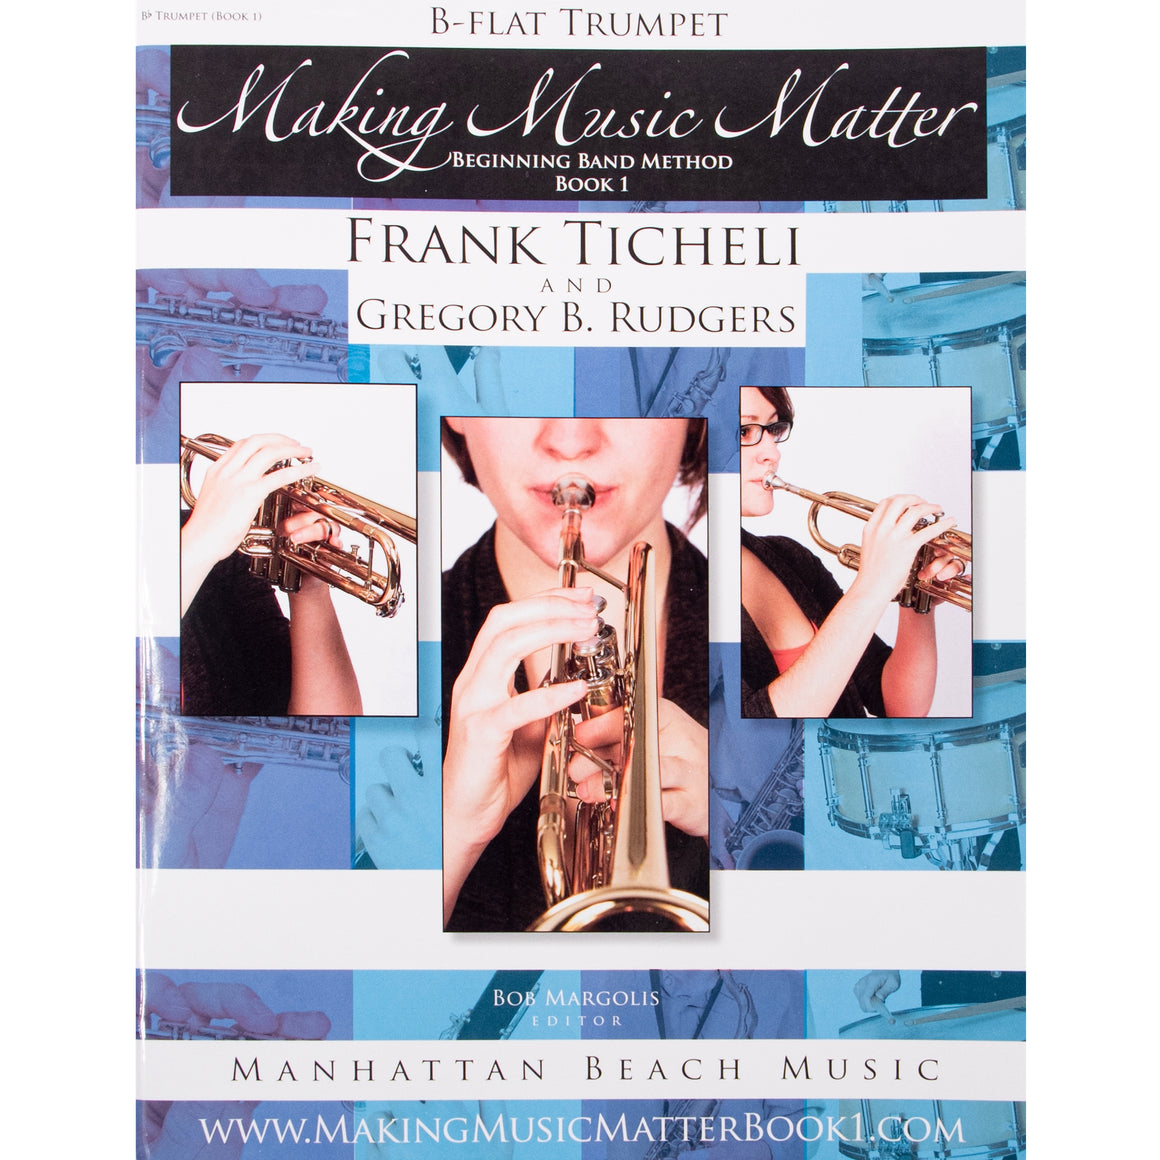 MANHATTAN BEACH 207005 Making Music Matter, Bb Trumpet (Book 1)